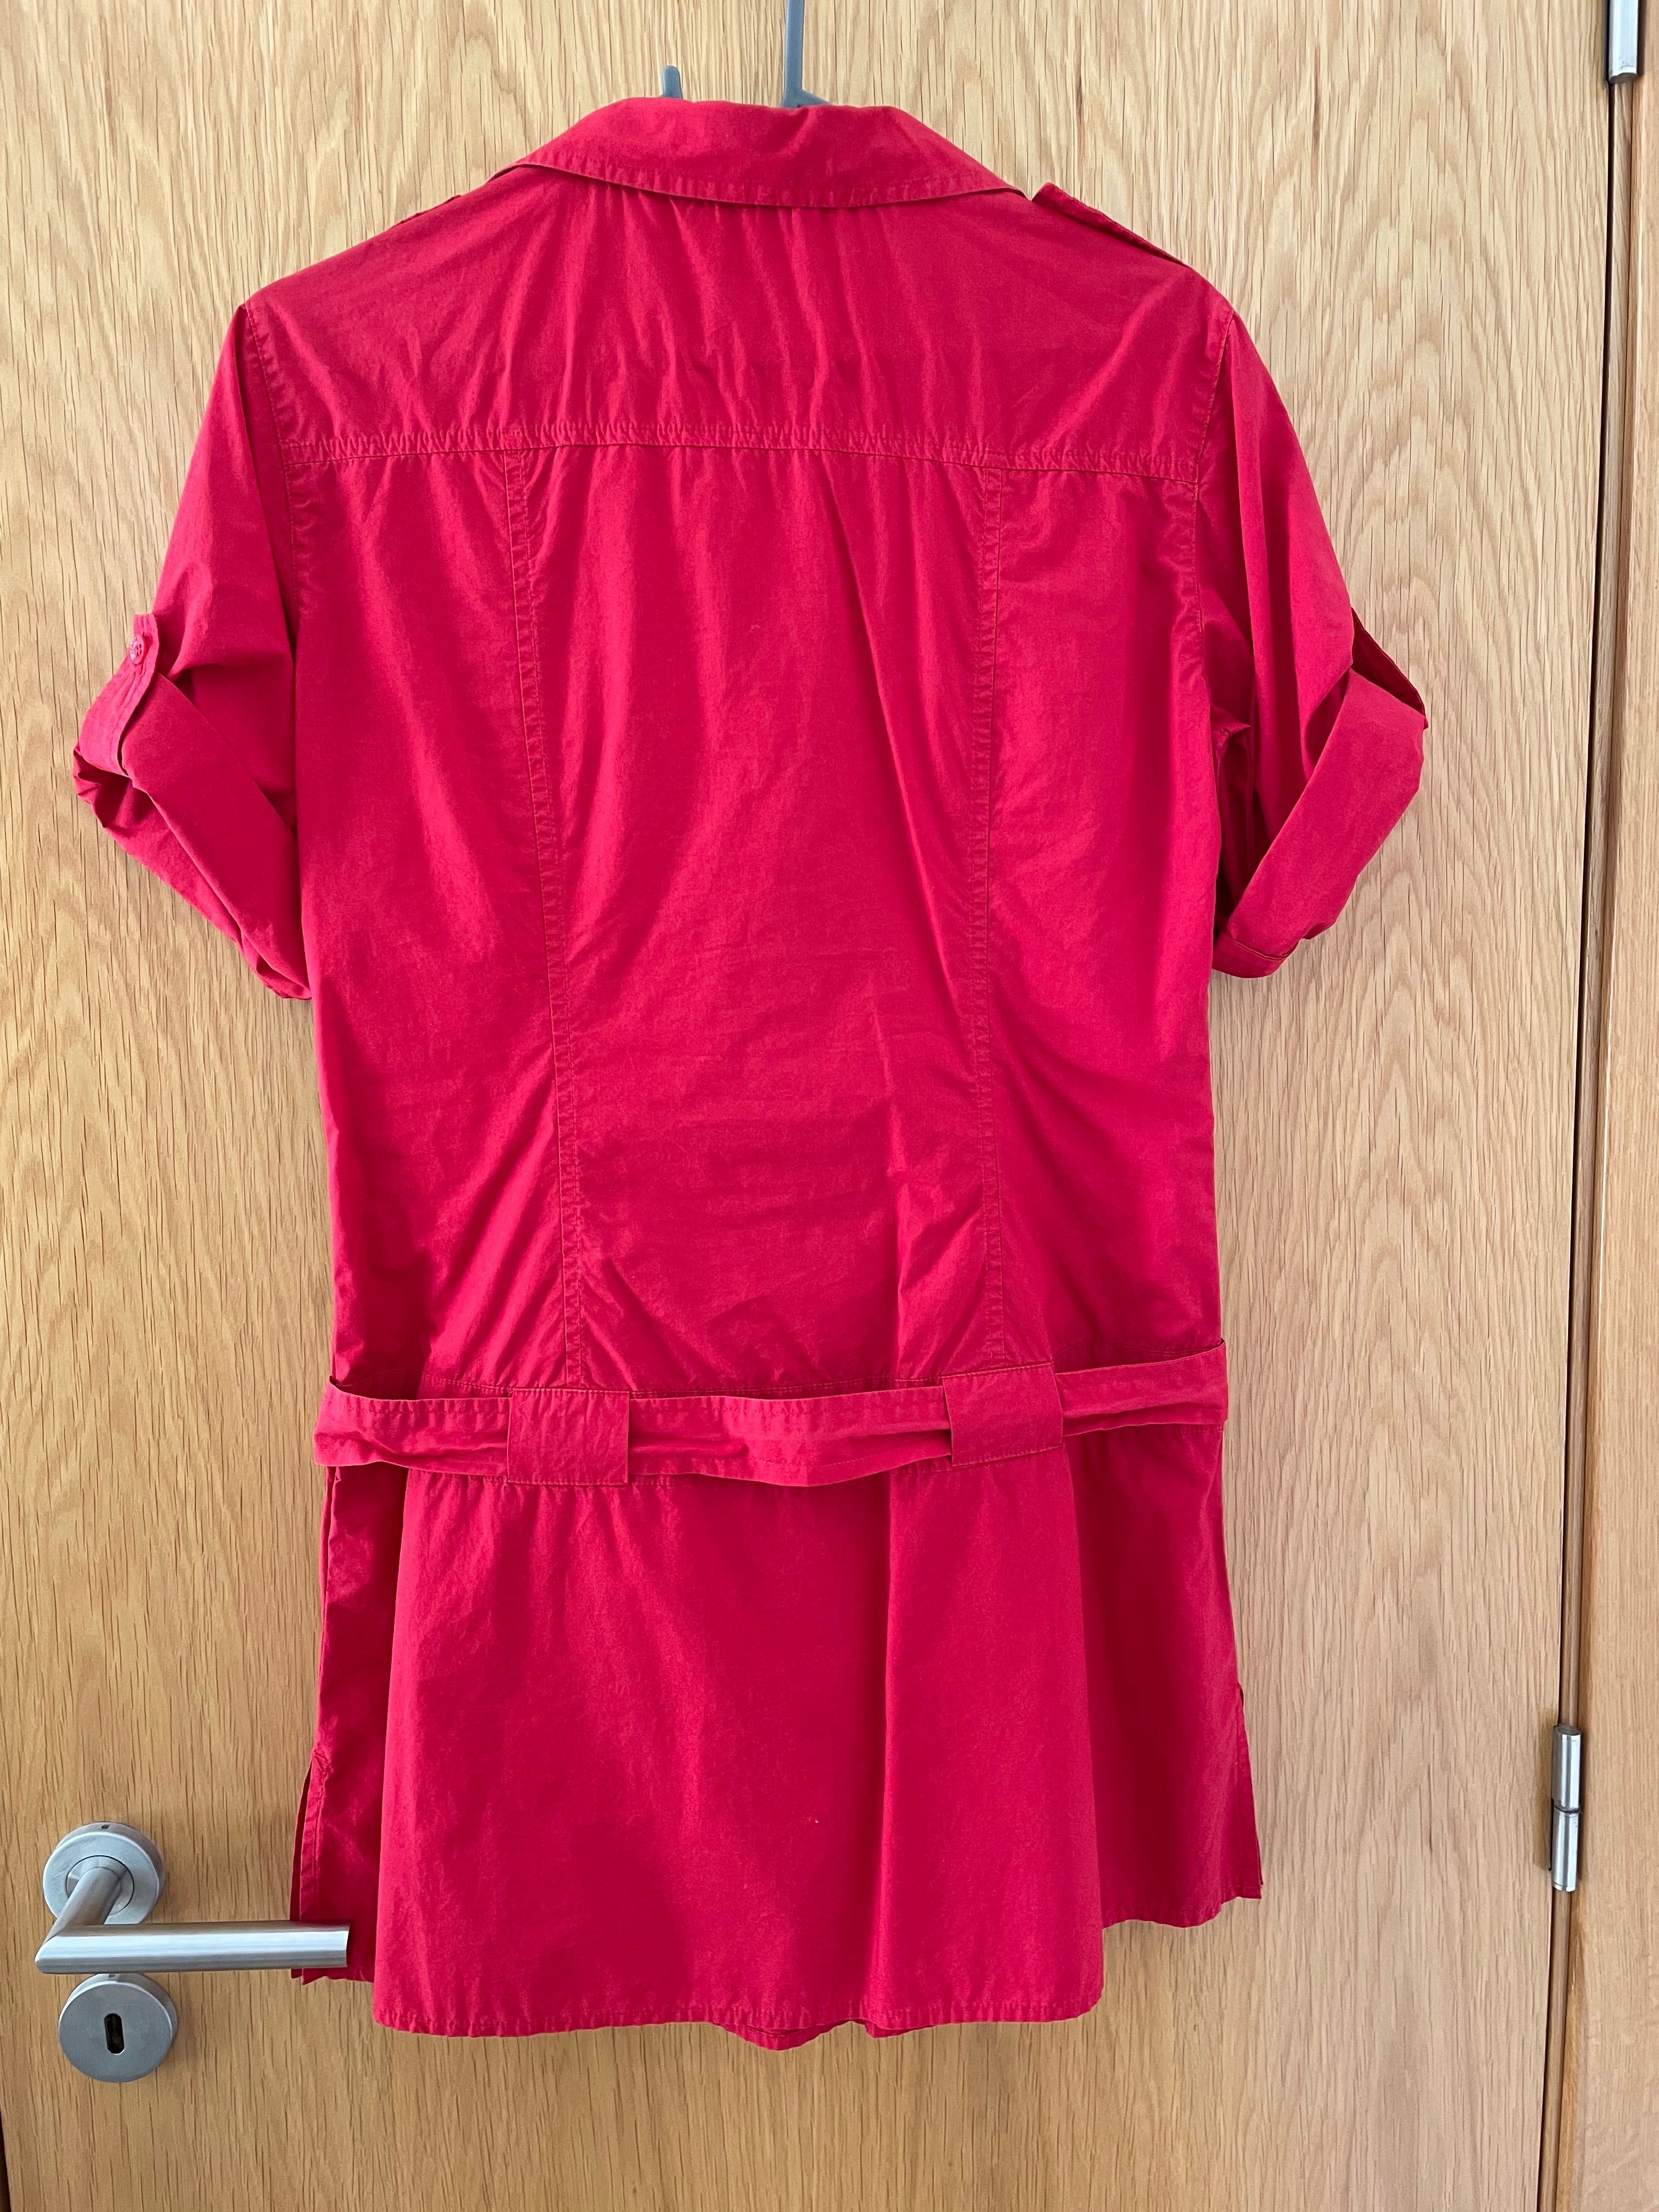 Vestido camiseiro vermelho da Salsa - M